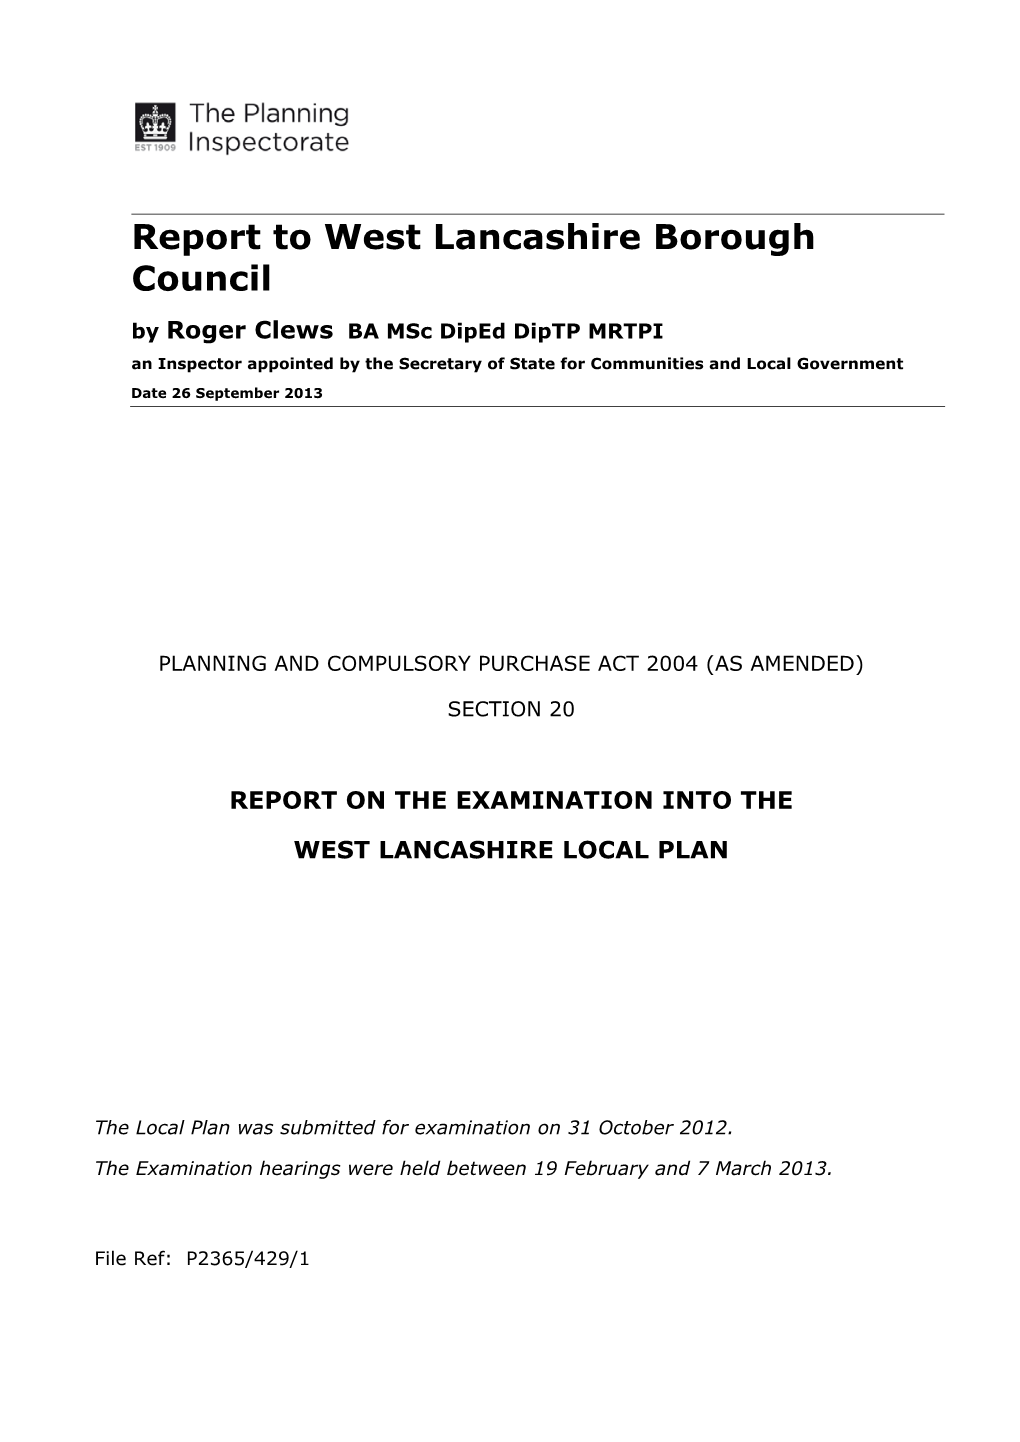 Report to West Lancashire Borough Council